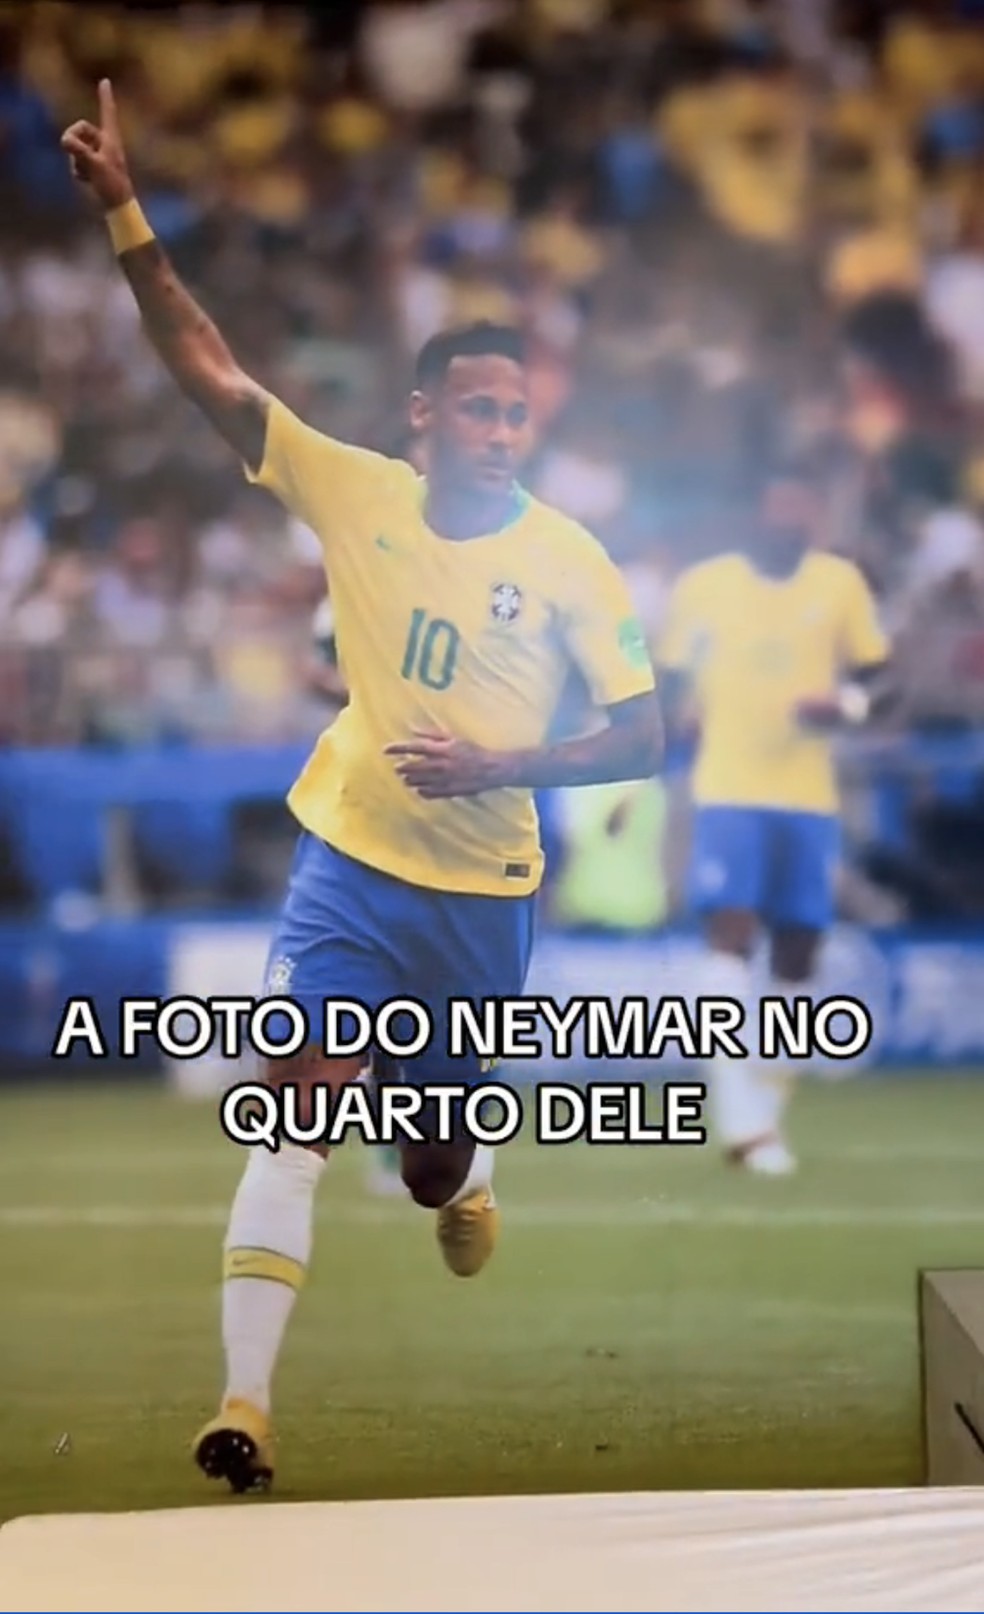 Ele também tem um painel gigante com uma imagem do Neymar que ocupa uma aprede inteira — Foto: TikTok / @alannamagalhaes_ / Reprodução